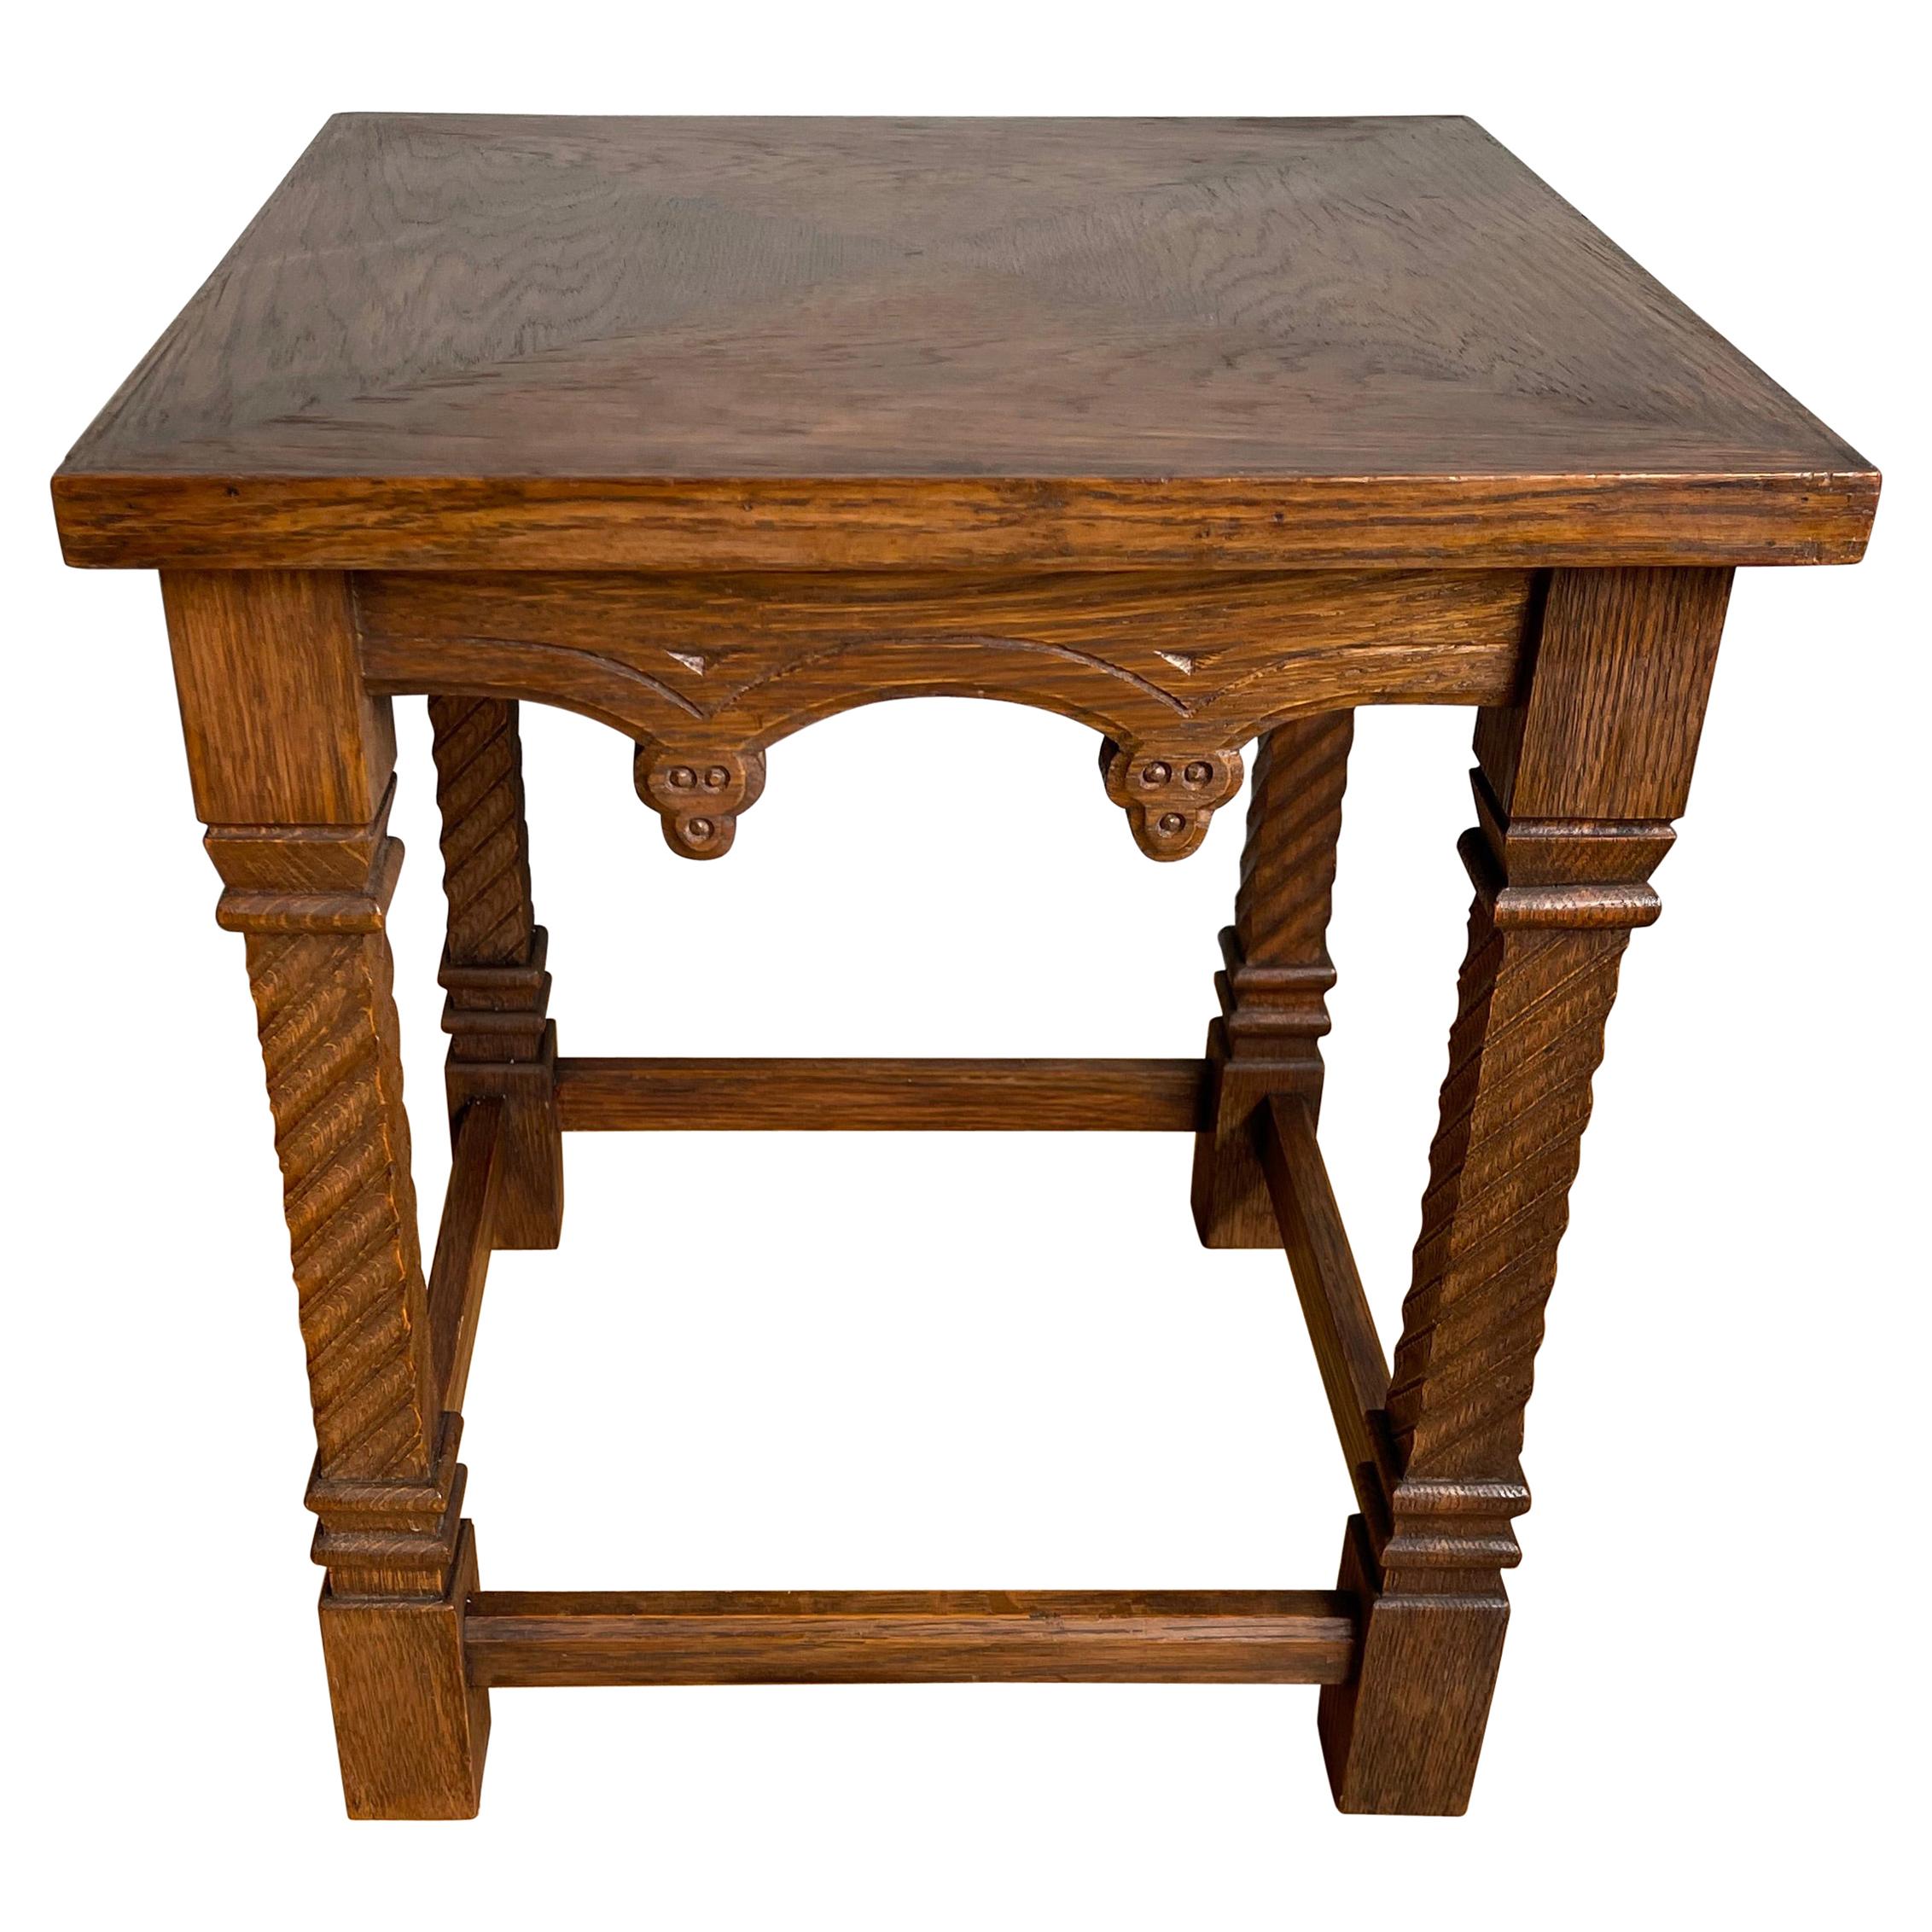 Table d'appoint Antique Revival pratique sculptée à la main avec. Motif d'enveloppe incrusté